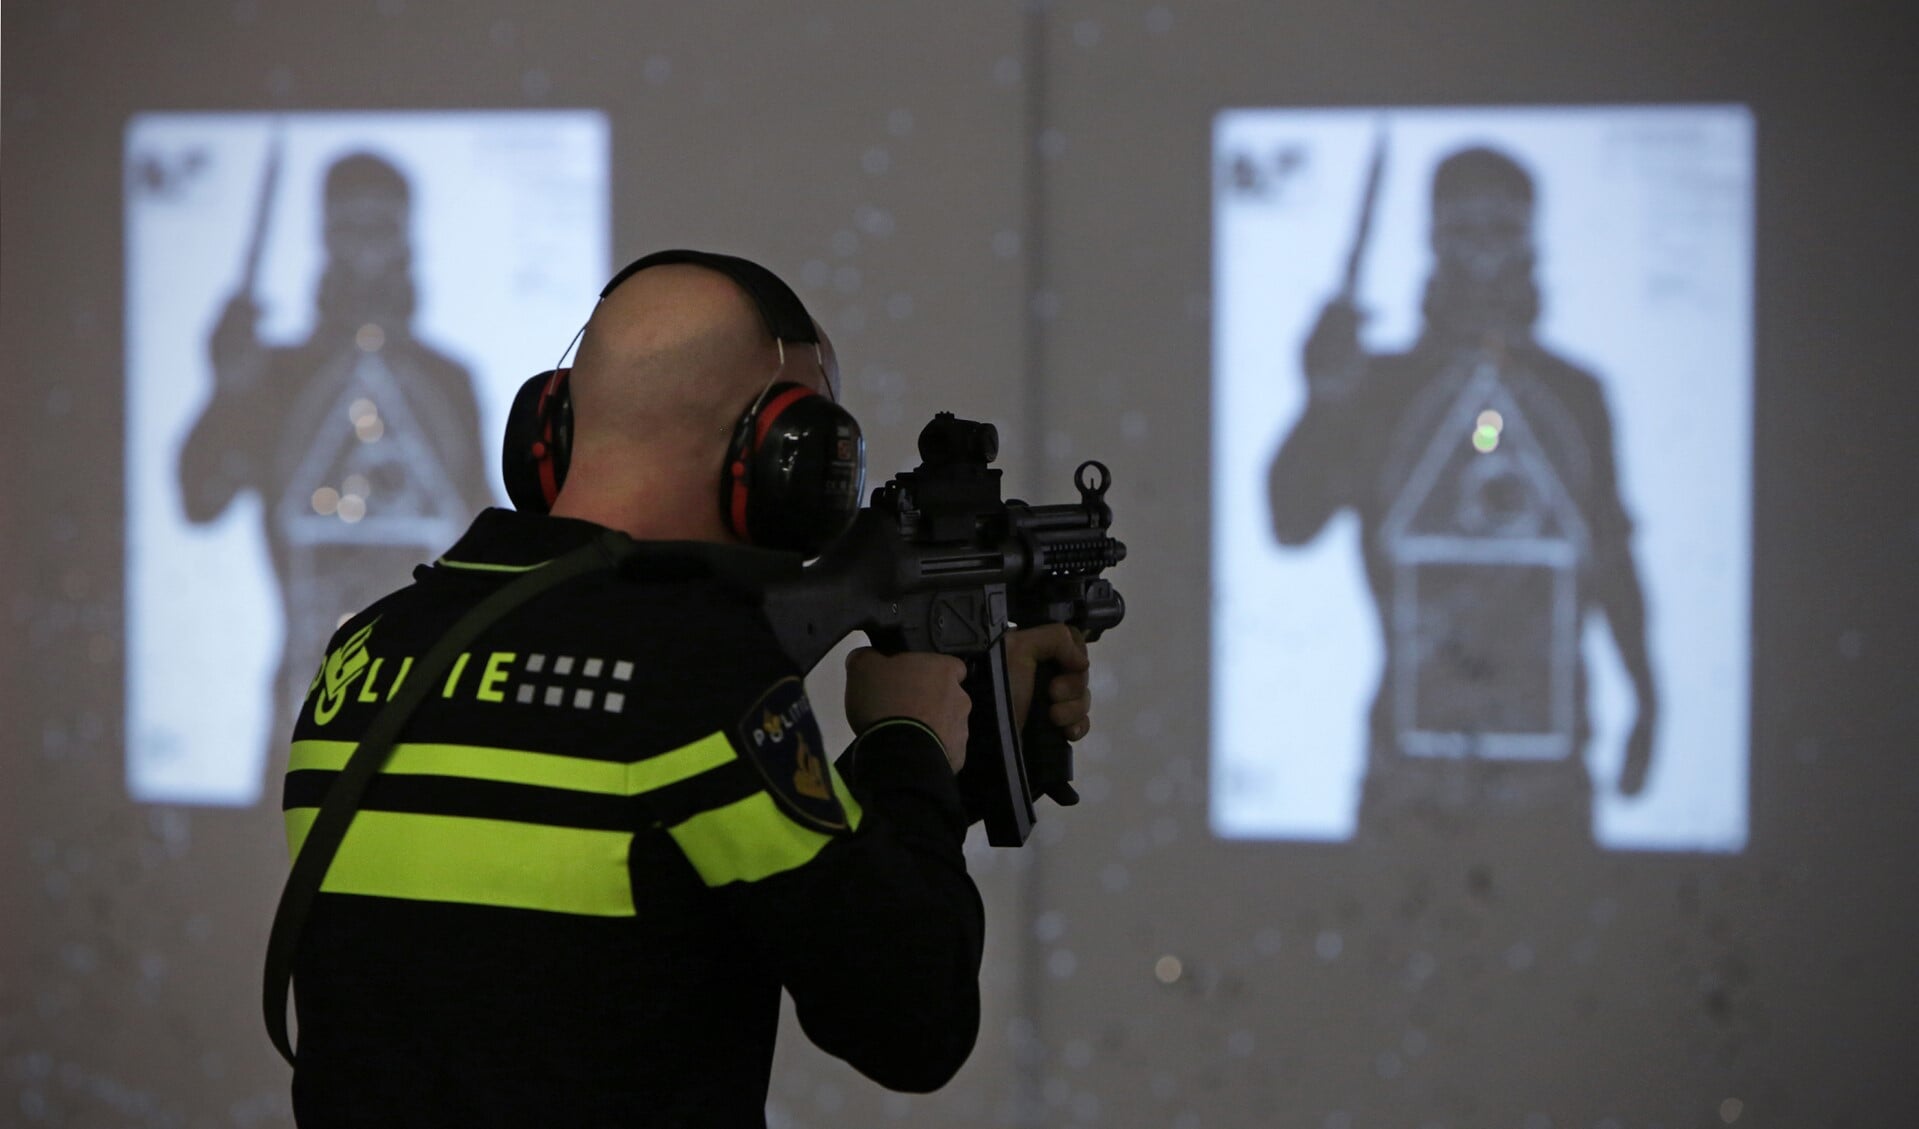 De politie leidt extra agenten op met machinegeweren. (Foto: politie.nl)